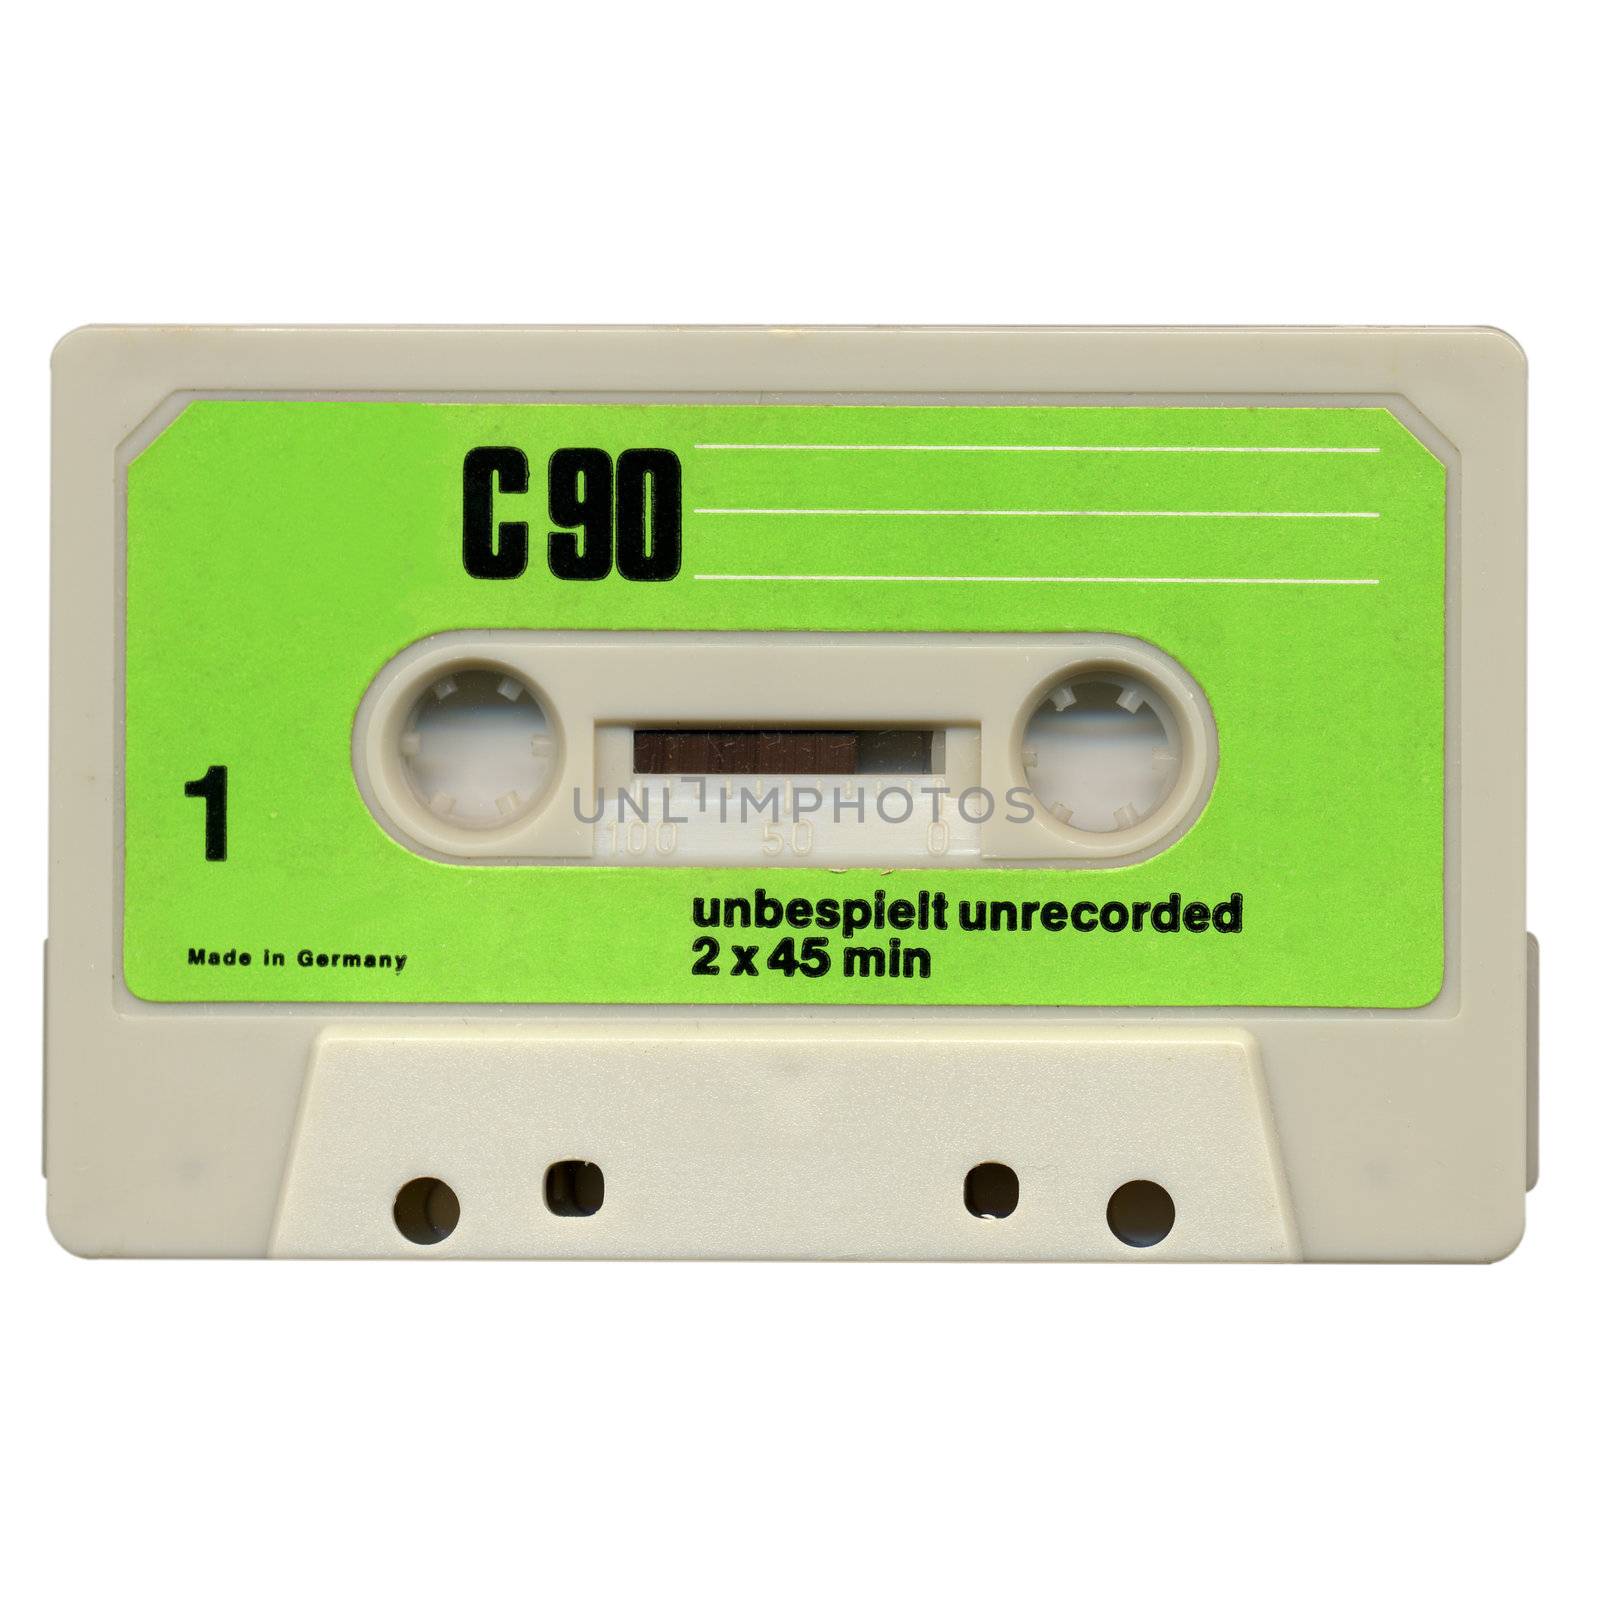 Magnetic audio tape cassette for music